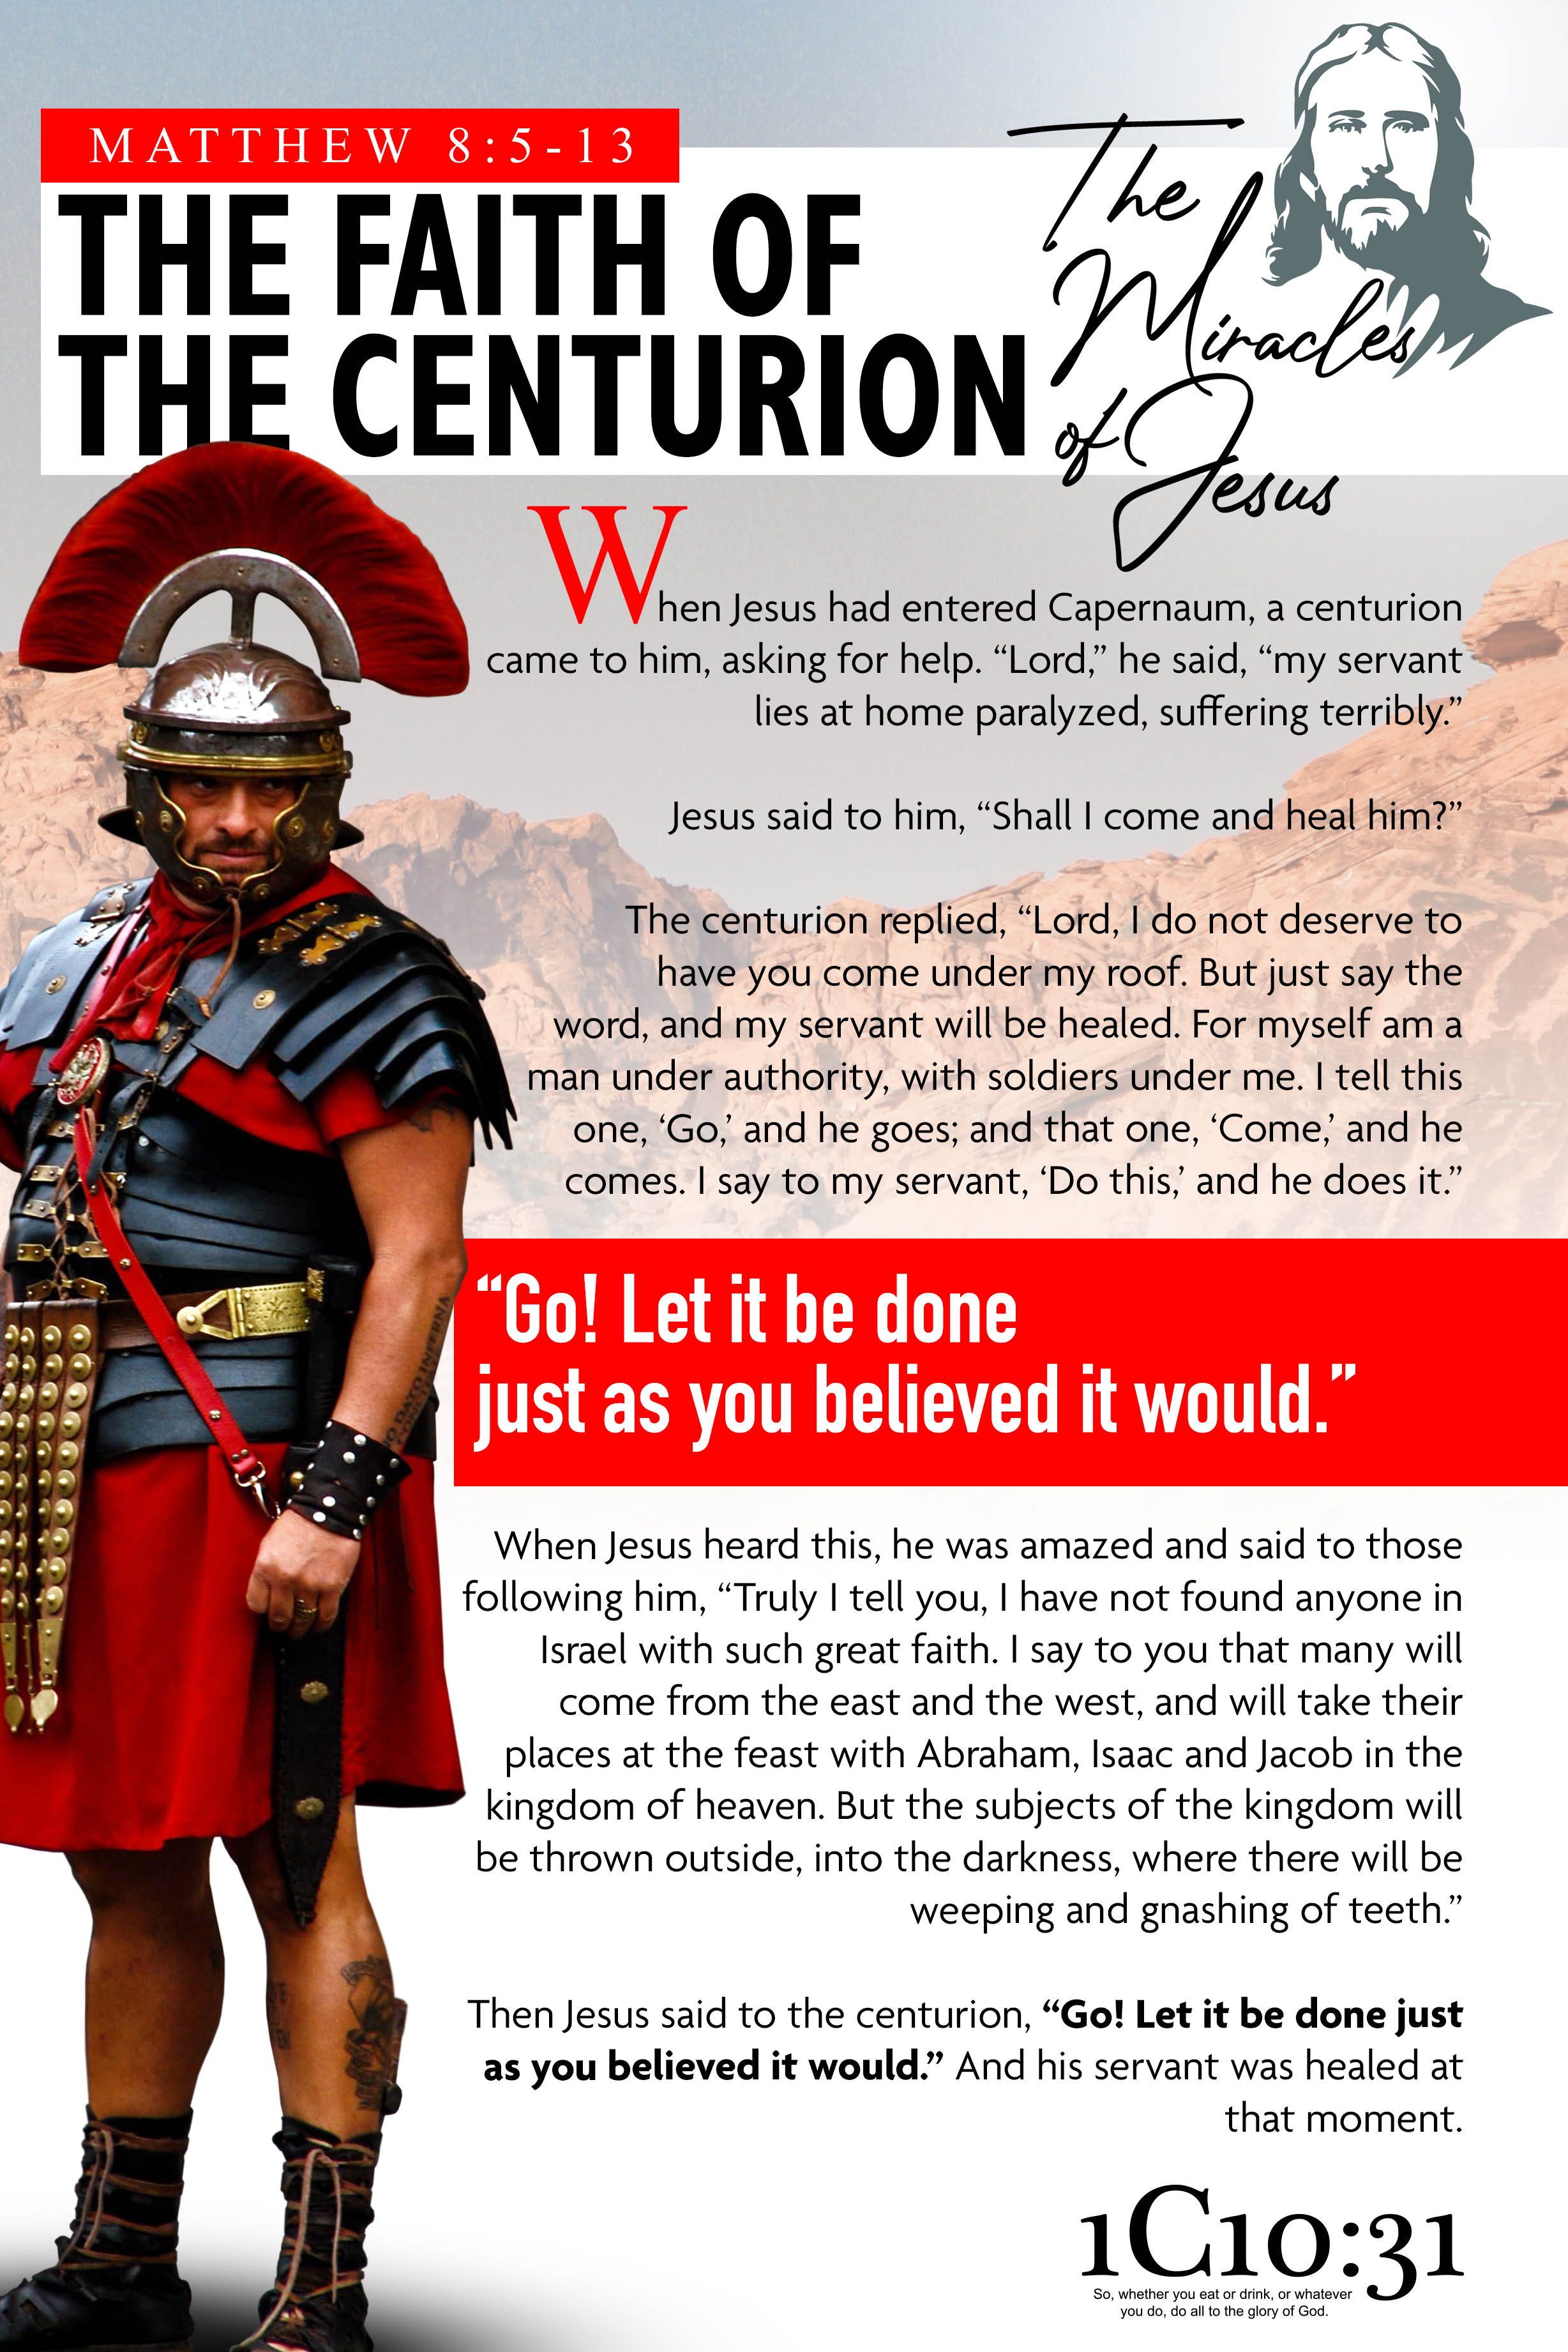 Matthew 8:5-13 - The Faith of the Centurion